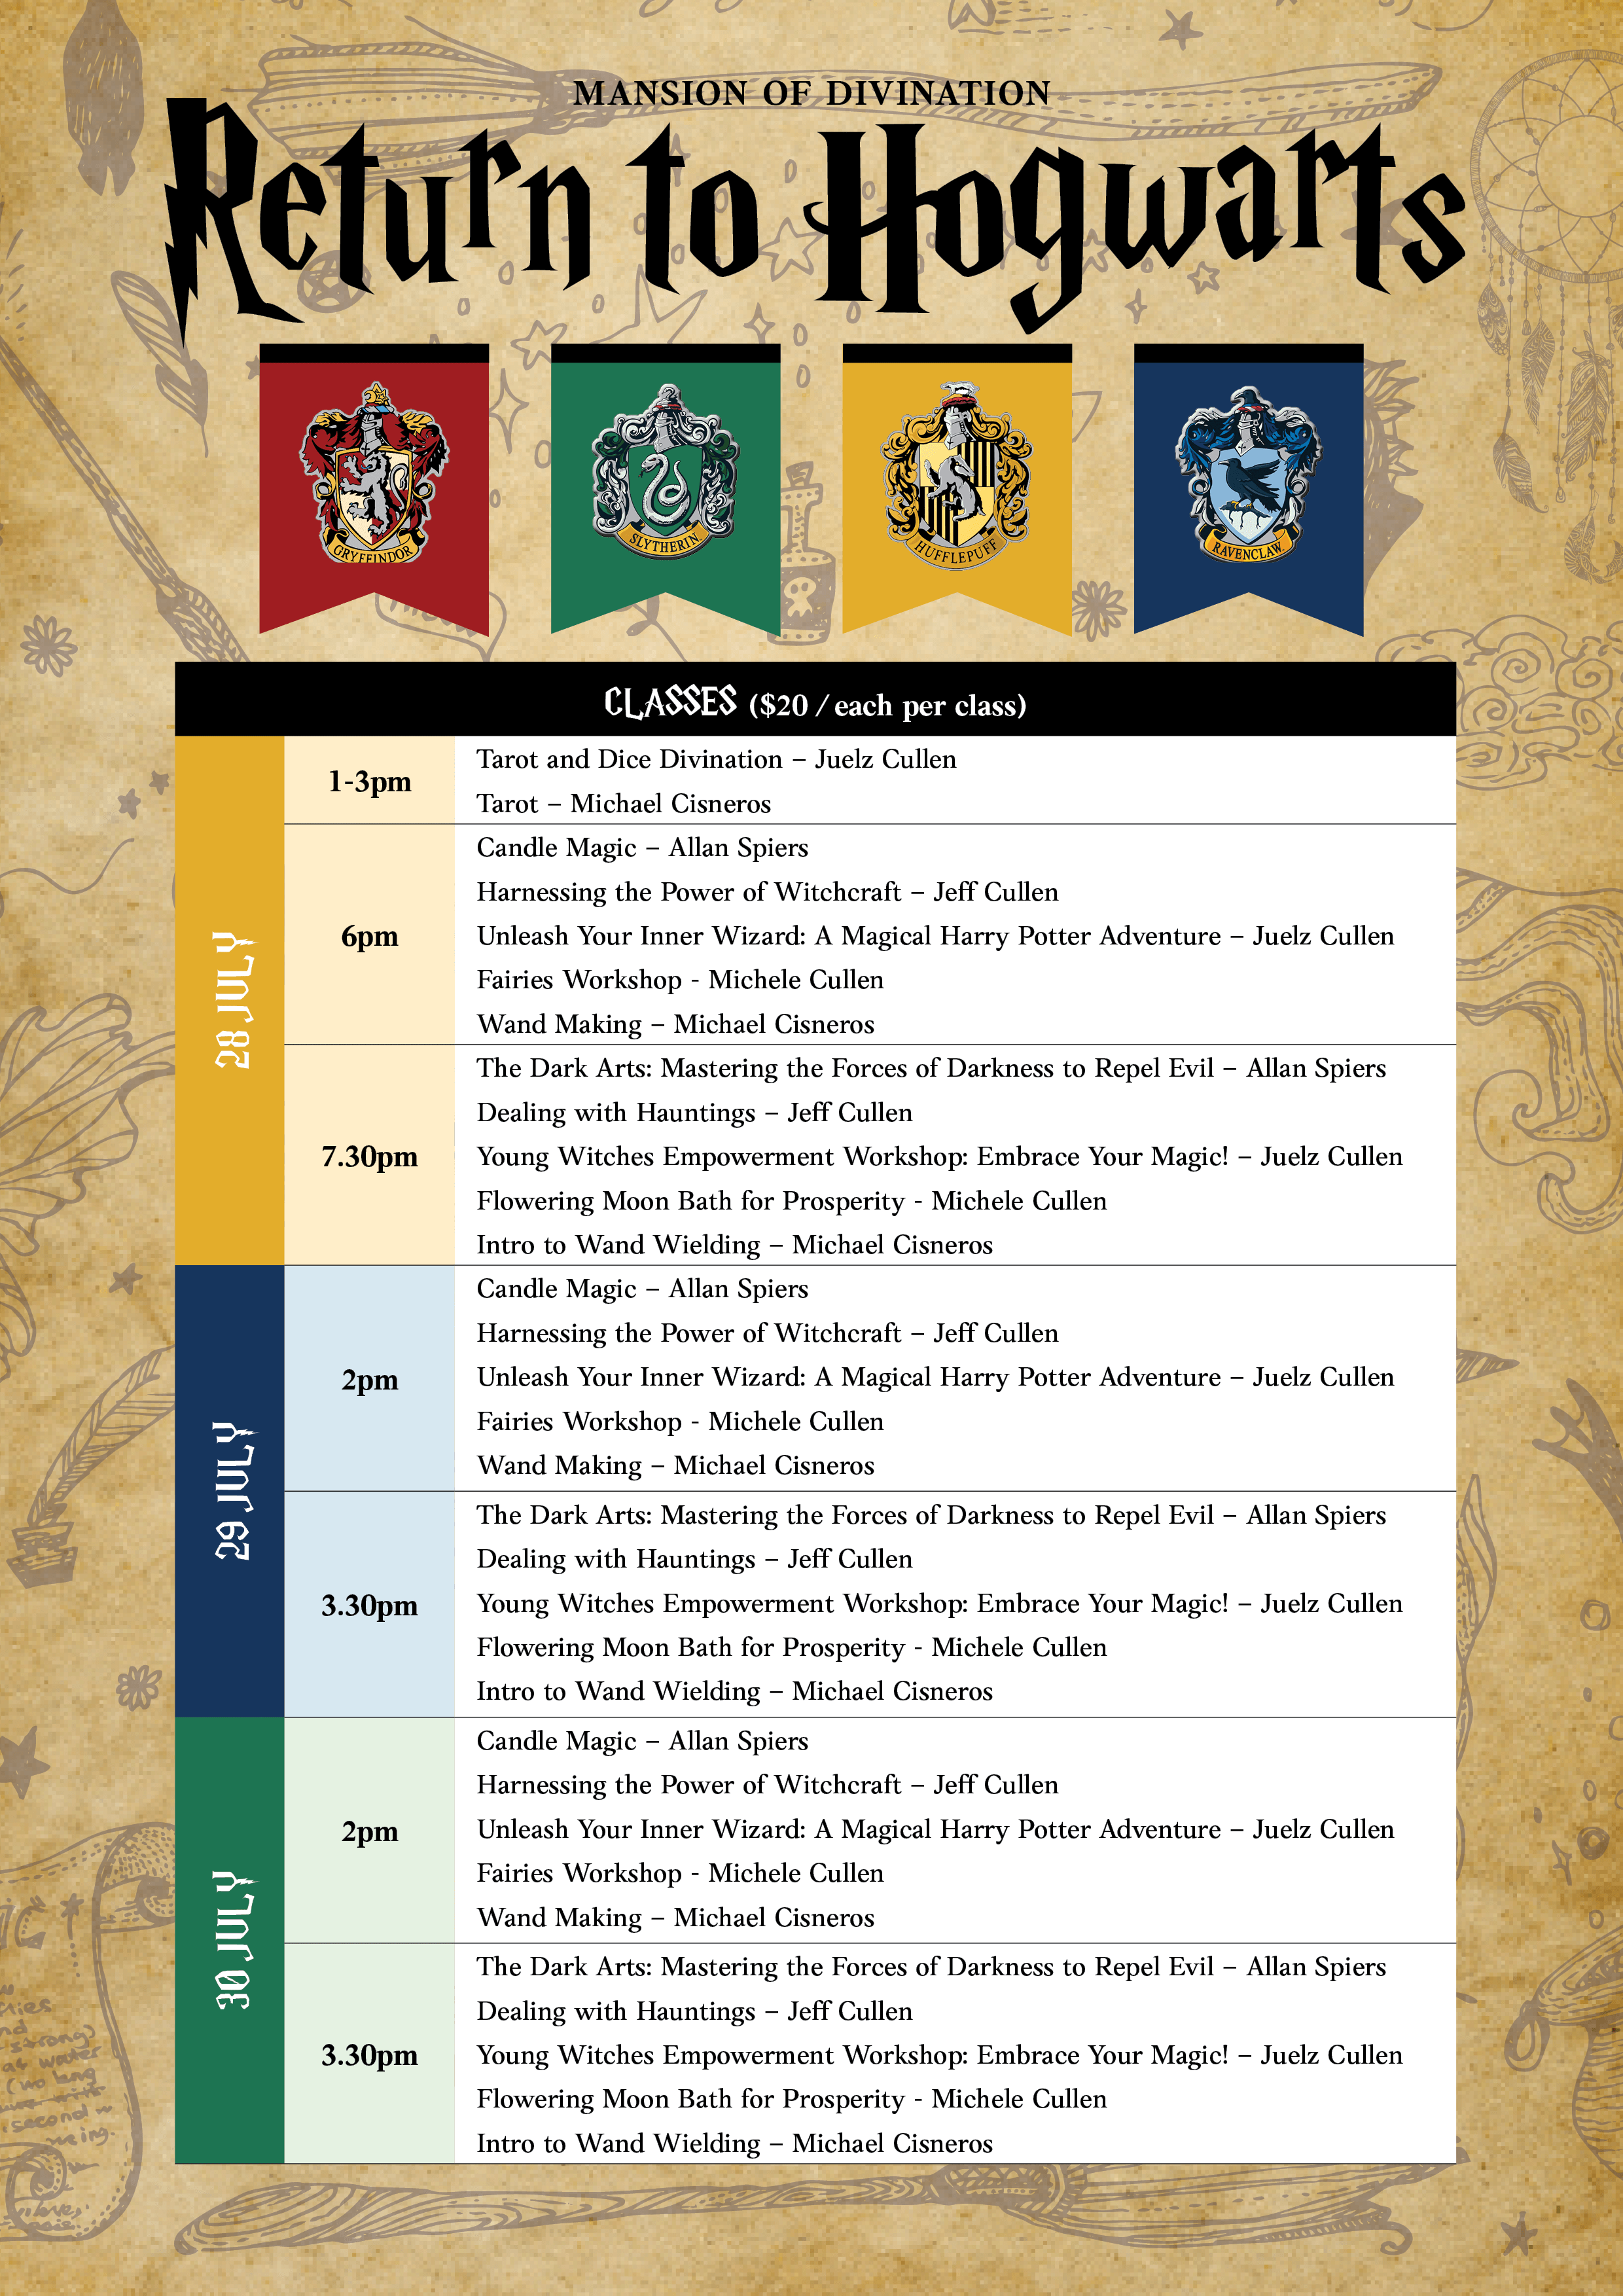 Hogwarts Schedule page 2